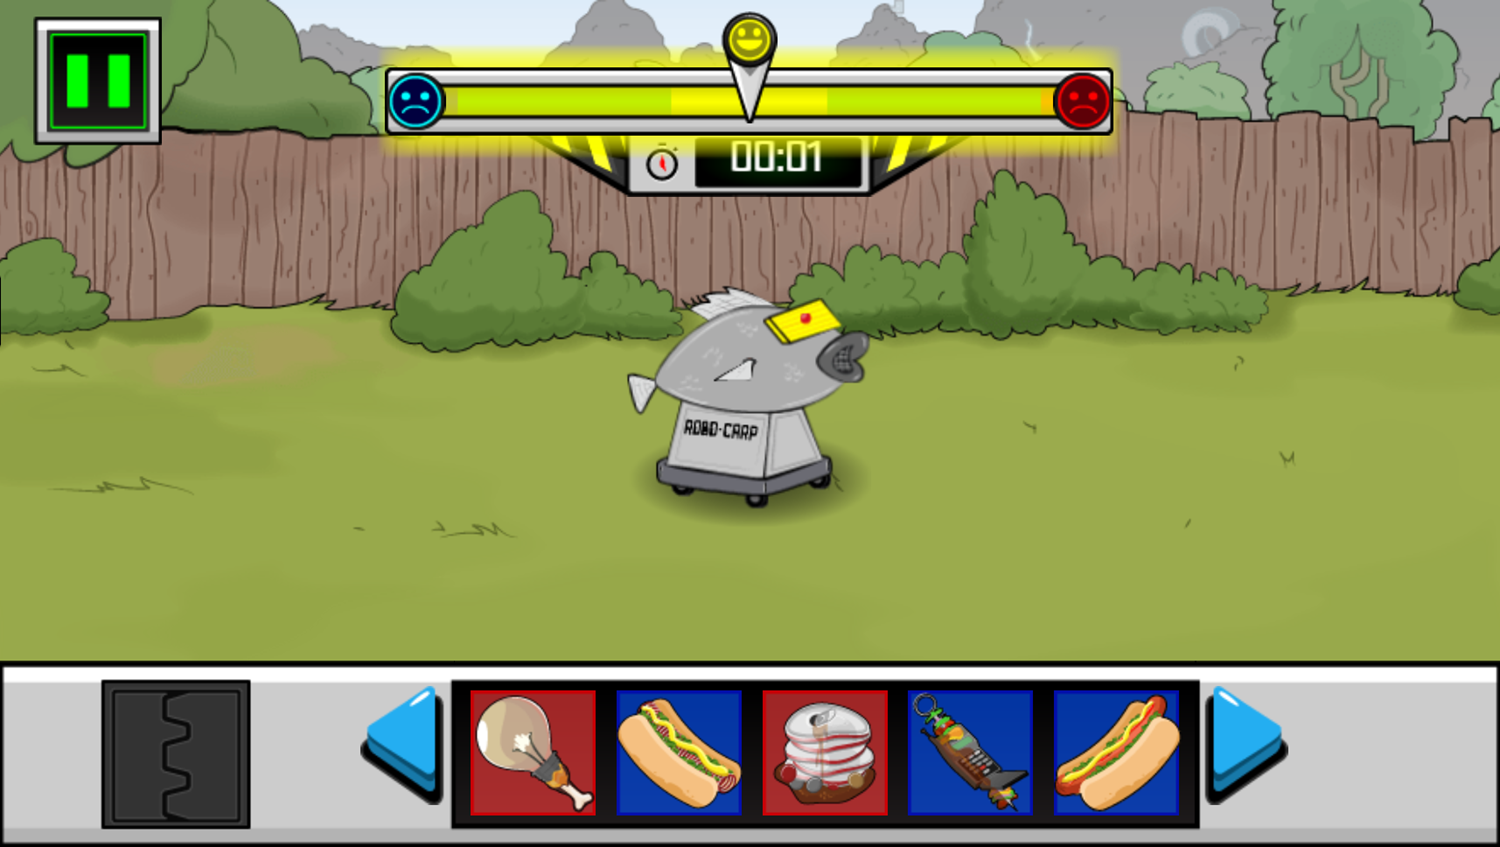 Robo-Carpe Diem Game Start Screenshot.